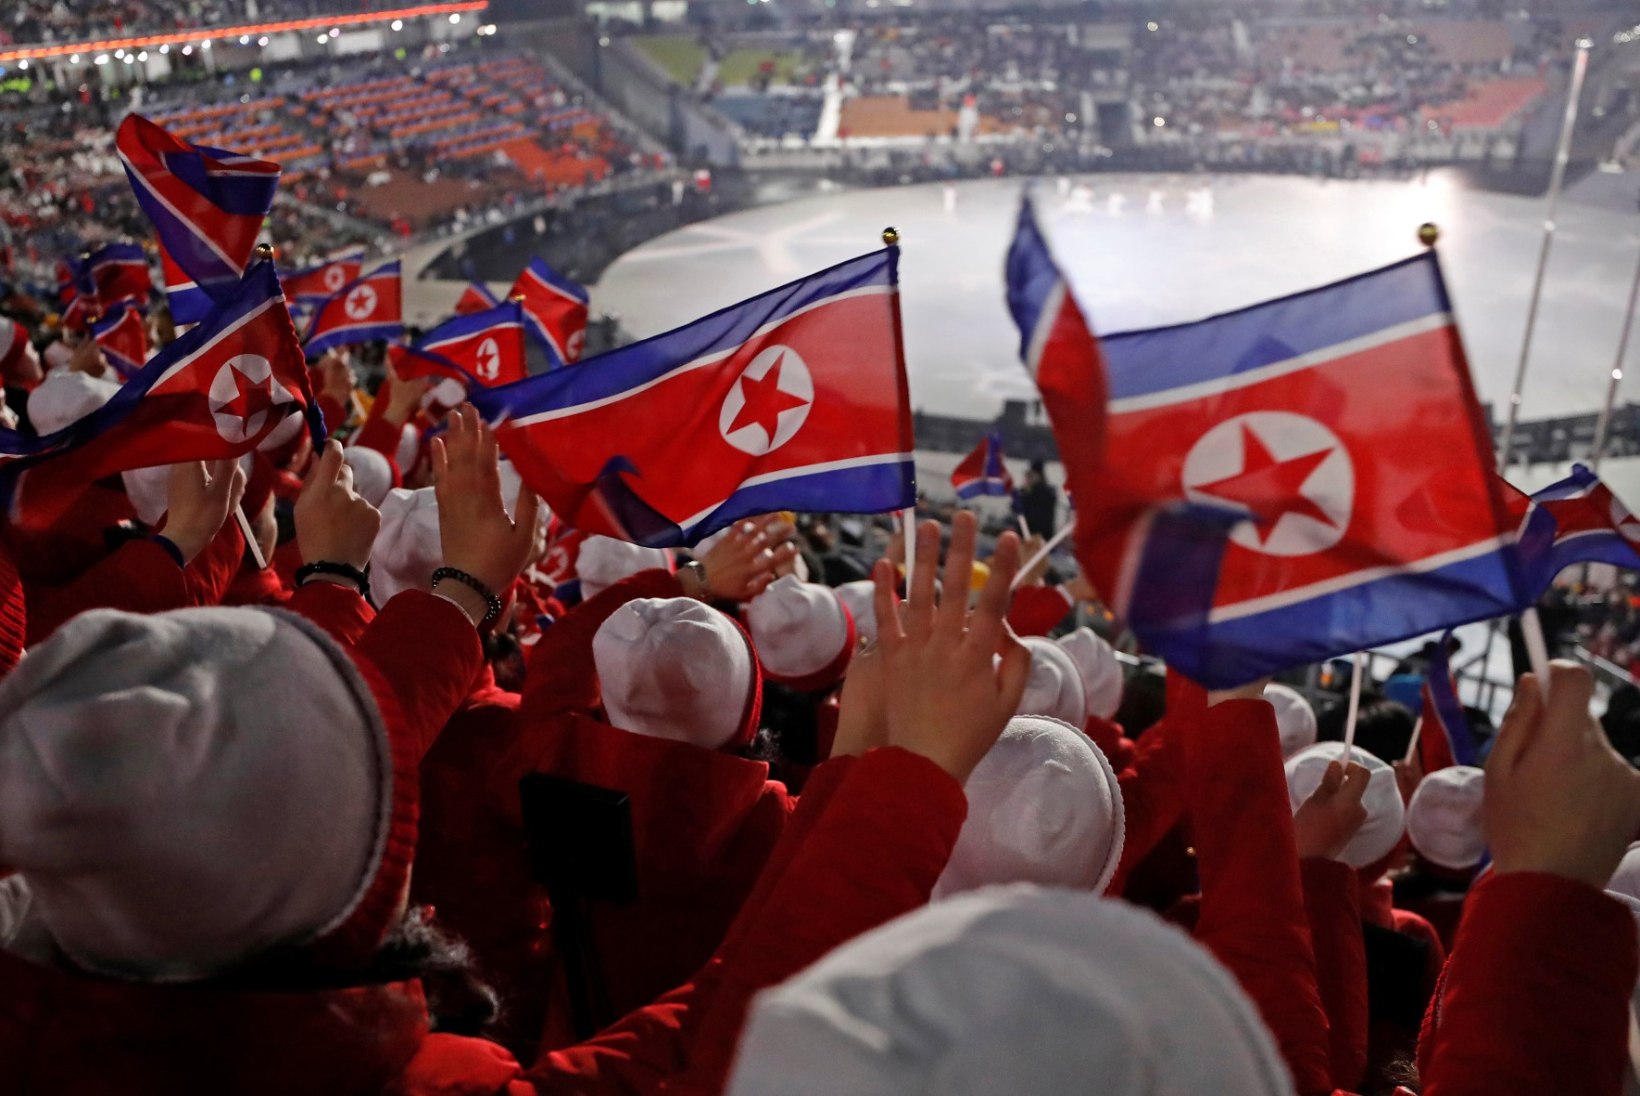 ÕL OLÜMPIAL | Veidrad Põhja-Korea ergutustüdrukud, "Gangnam style" ja meeleavaldused ehk noppeid avatseremoonialt